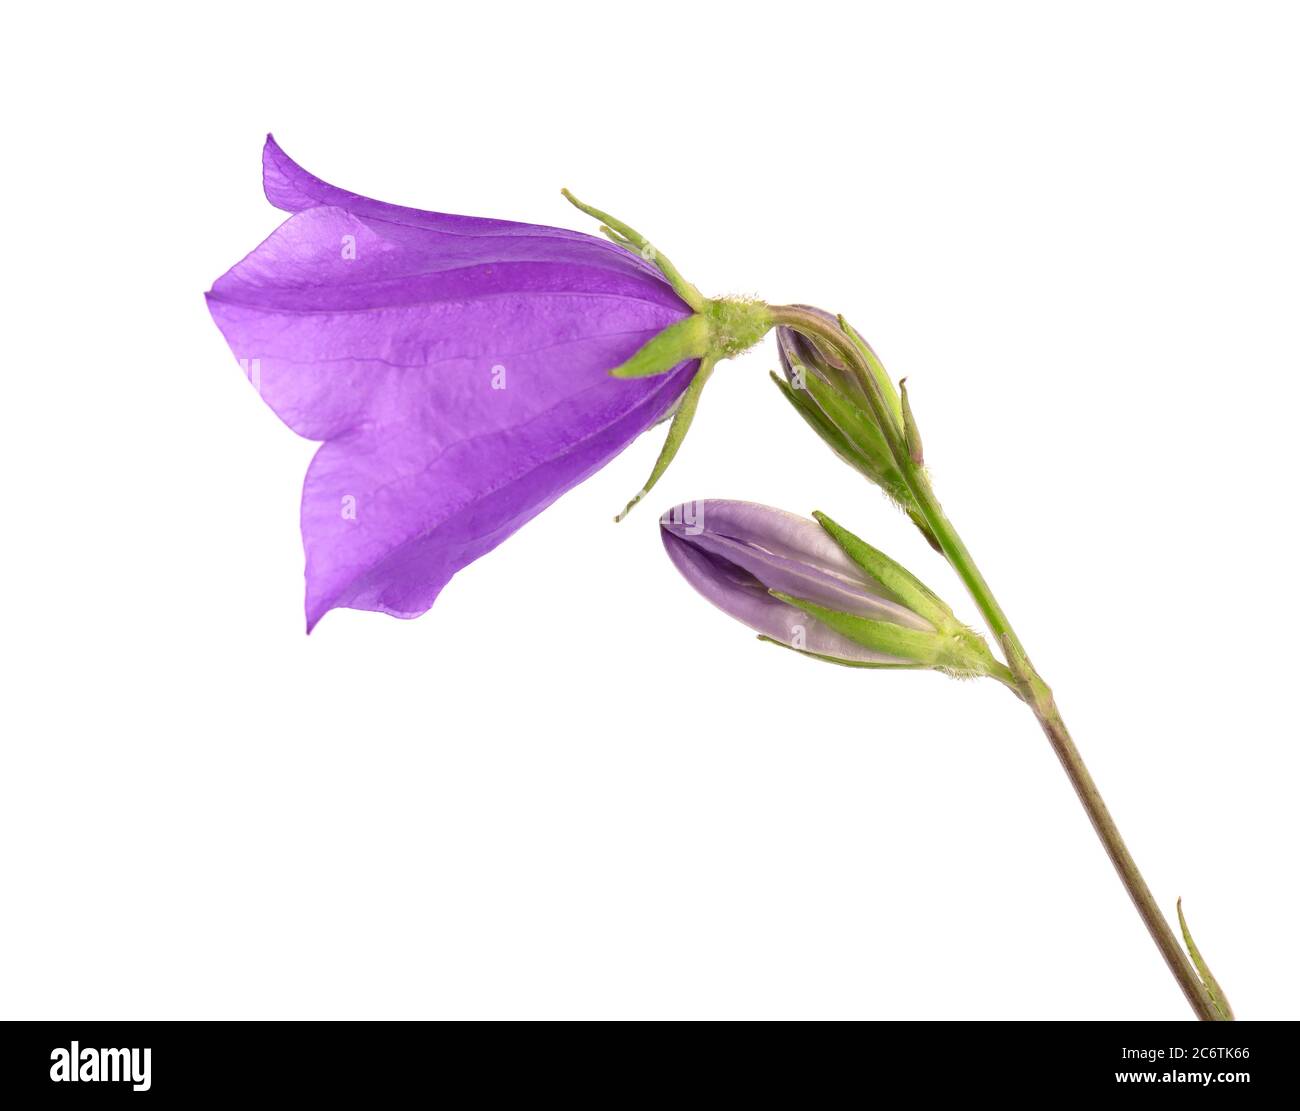 Viola campana fiore isolato su sfondo bianco. Bel bouquet fiorito. Foto Stock